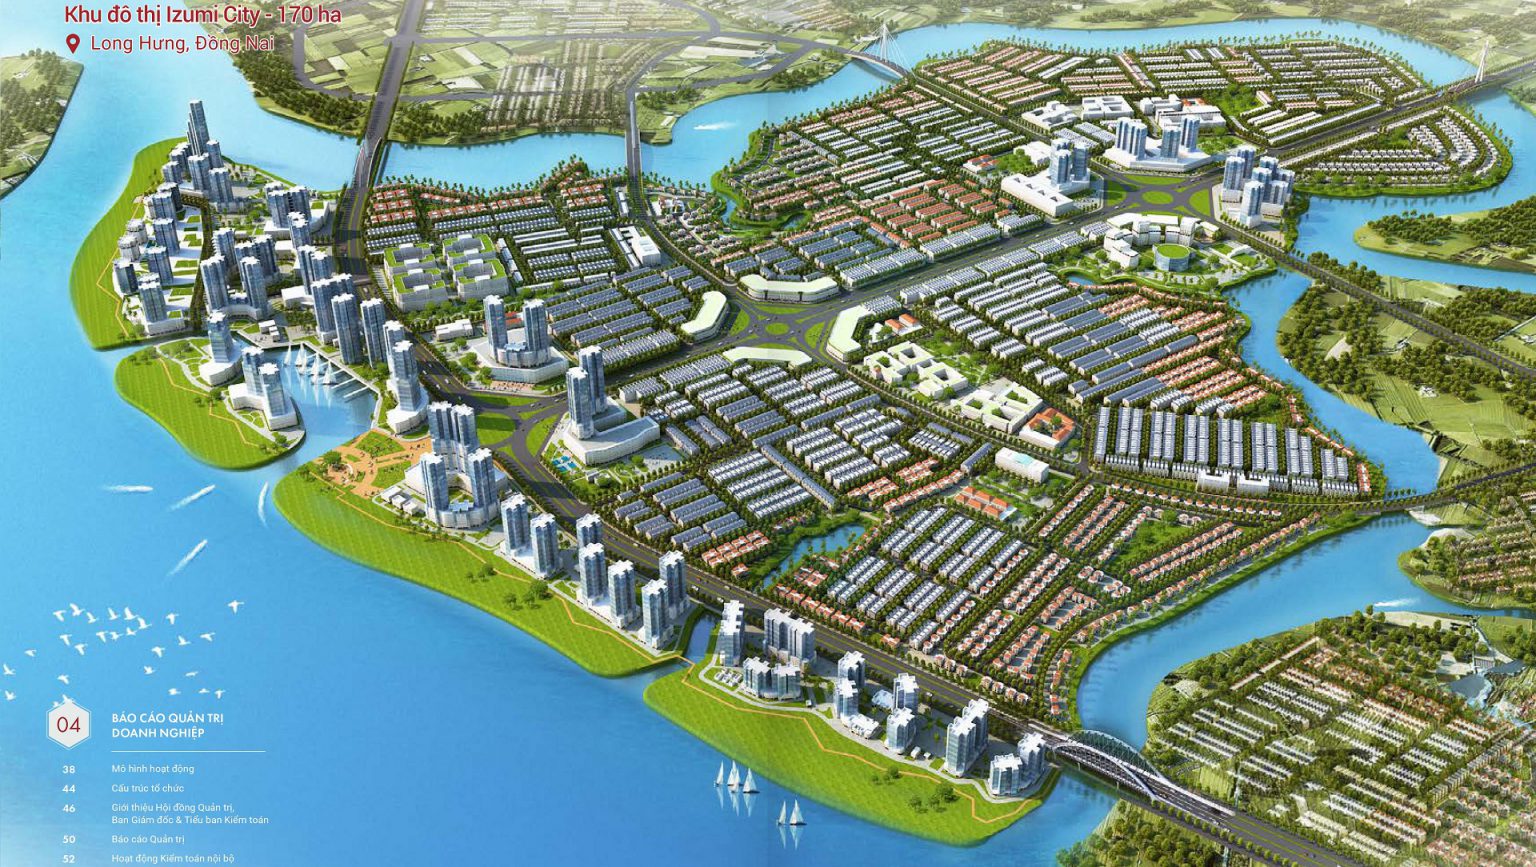 Phối cảnh tổng thể dự án khu đô thị Izumi City Biên Hòa, Đồng Nai